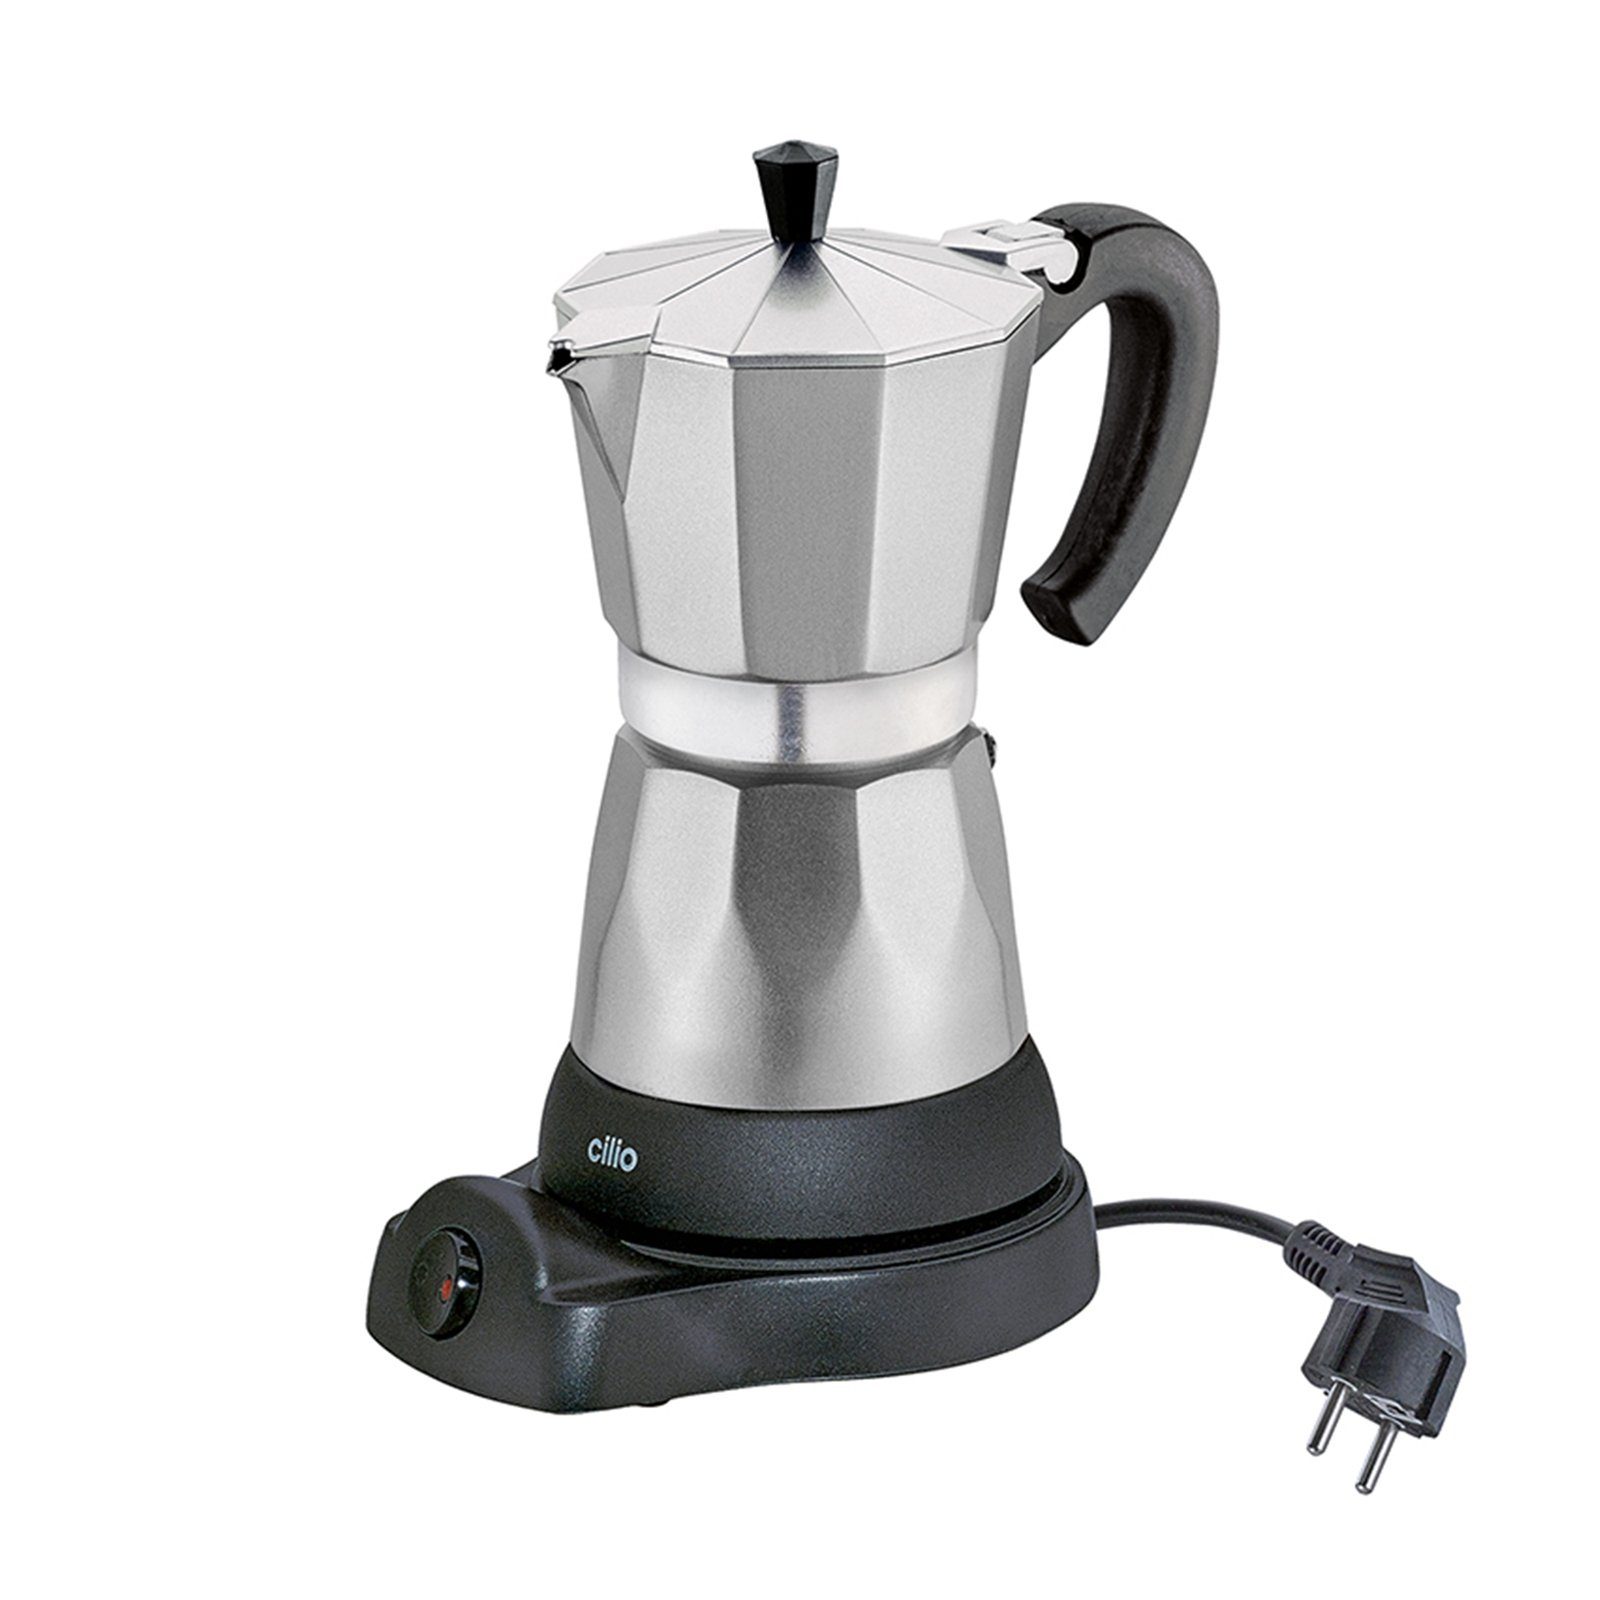 Cilio Espressokocher Elektrischer Espressokocher CLASSICO online kaufen |  OTTO